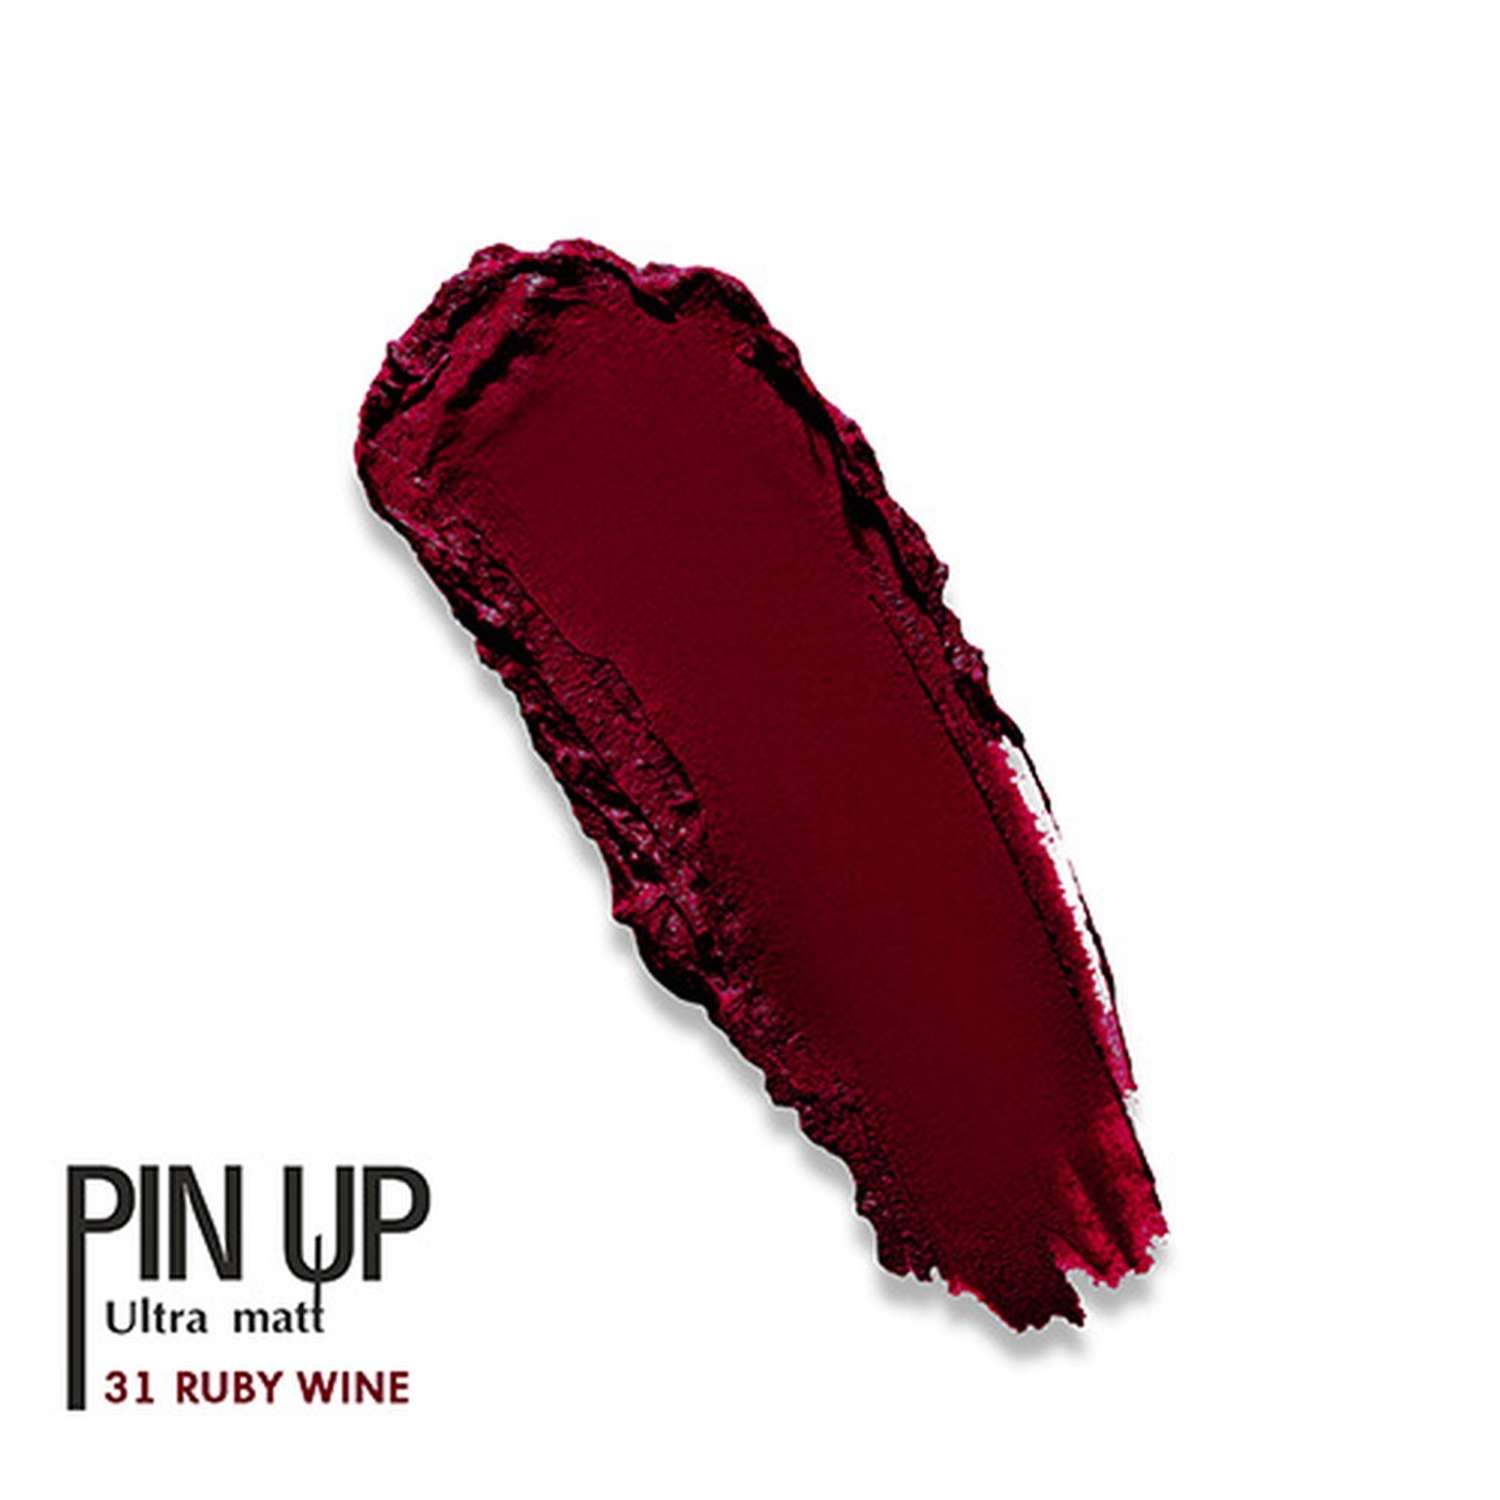 Блеск для губ Luxvisage Pin up ultra matt матовый тон 31 ruby wine - фото 5